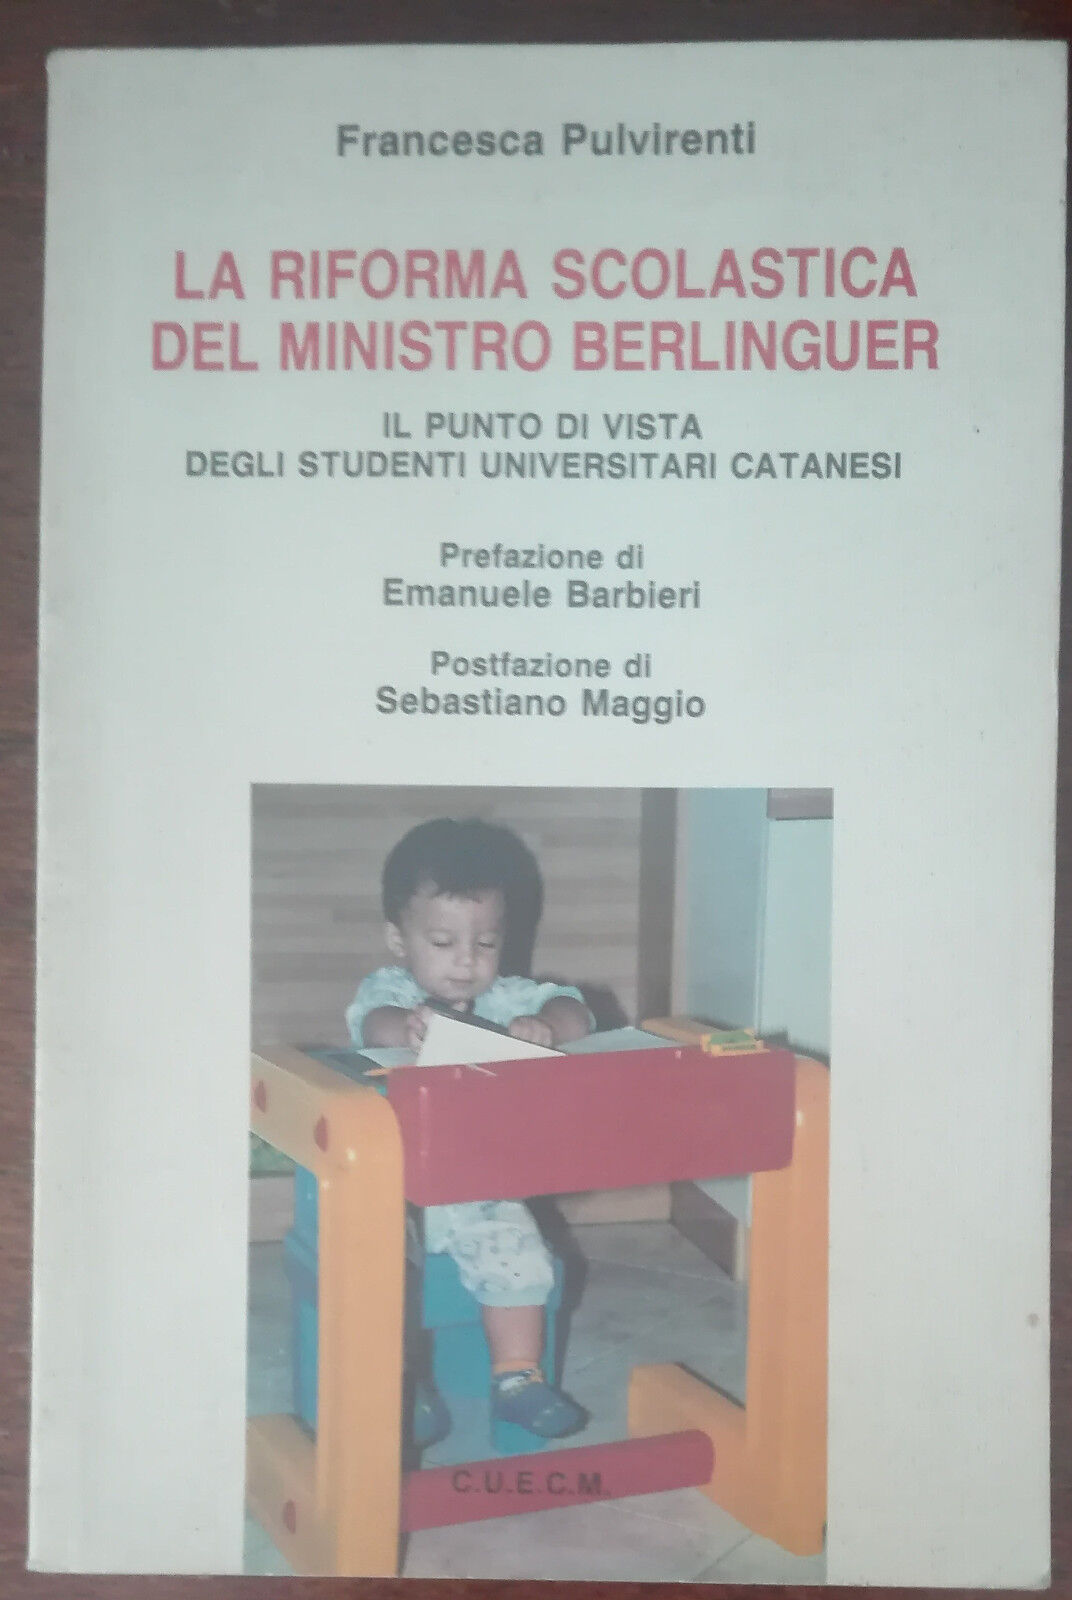 La riforma scolastica del ministro Berlinguer - Pulvirenti - C.U.E.C.M.,1998 - A